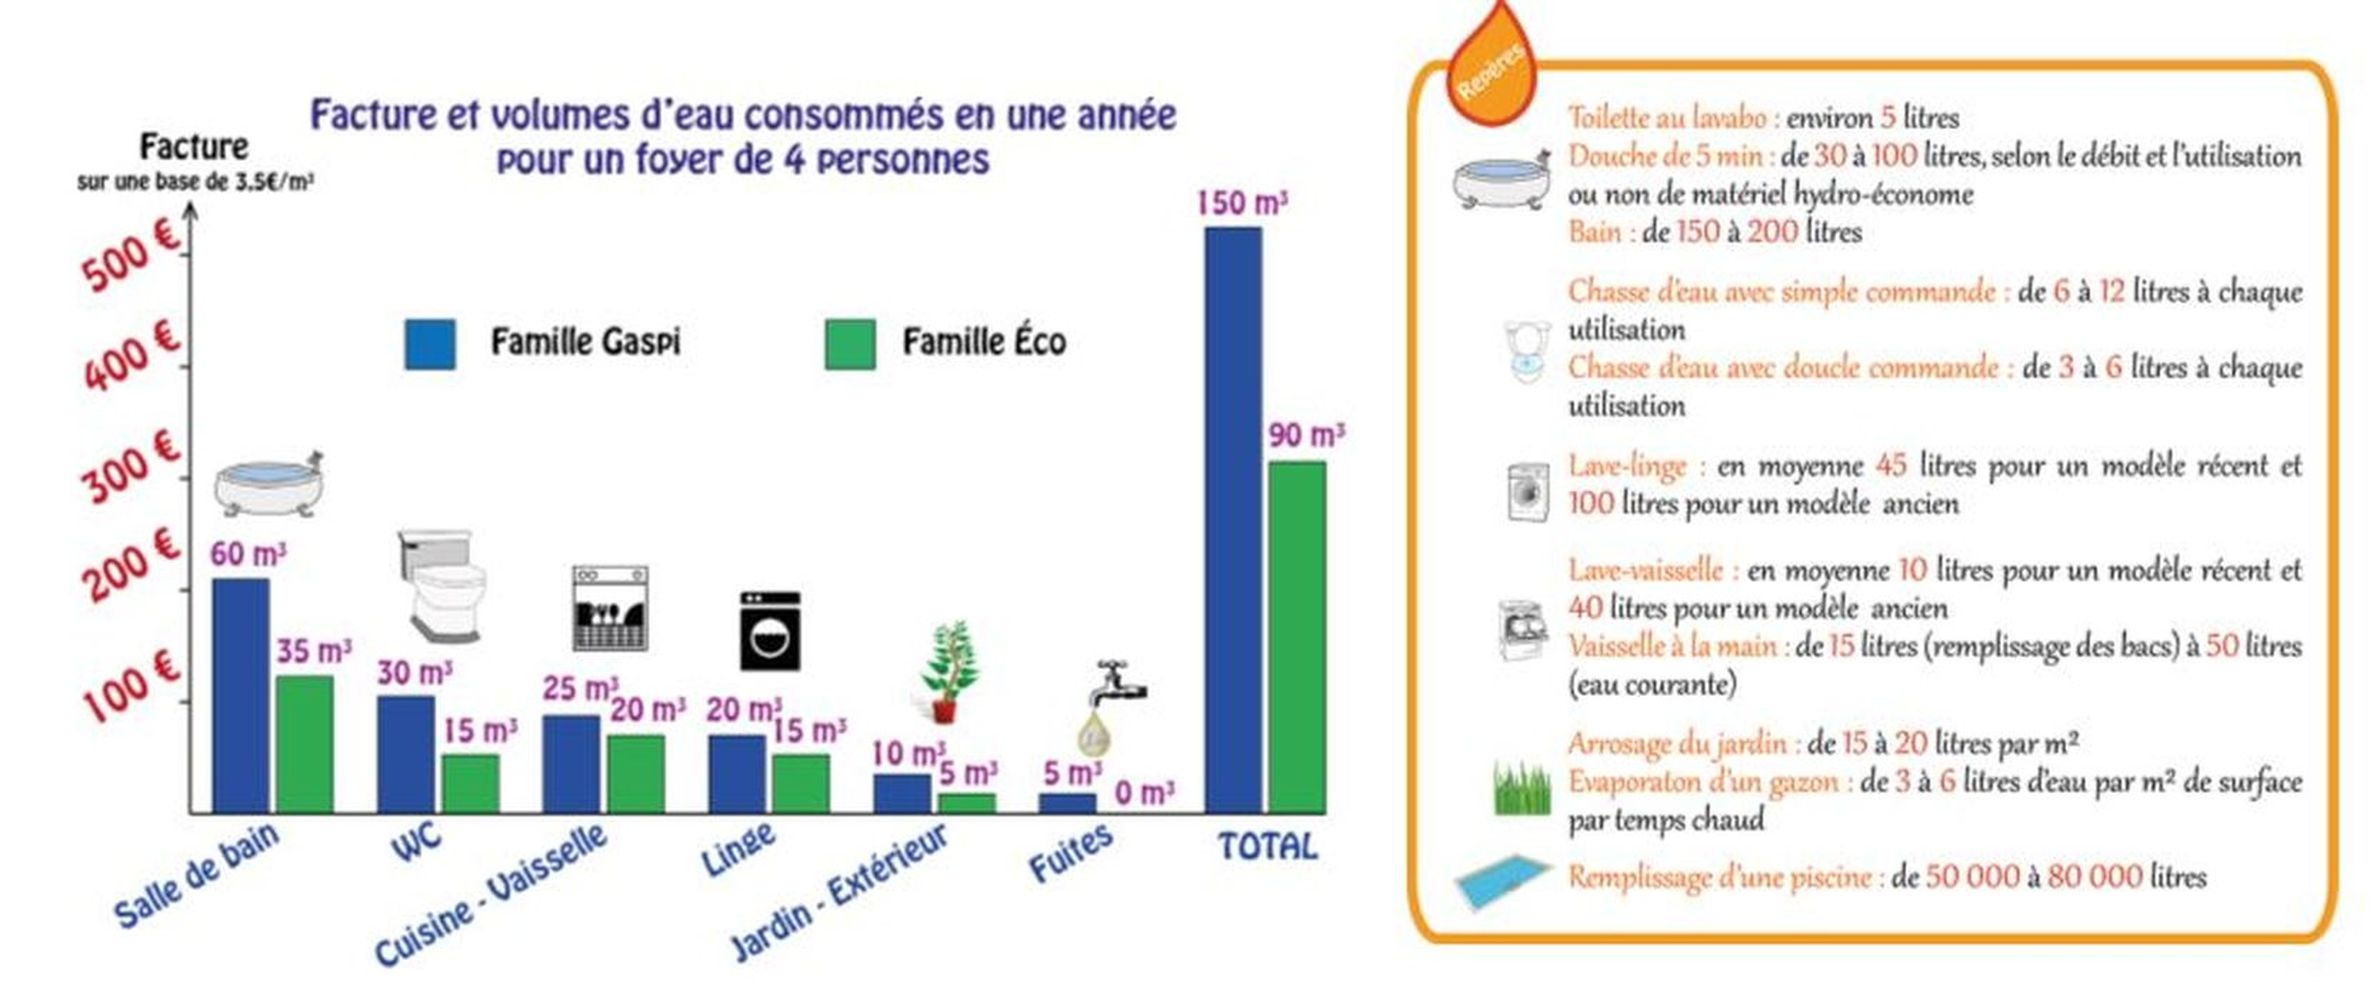 Les Bons Gestes - Eau En Poitou-Charentes : Rpde à Consommation D Eau Pour Une Douche